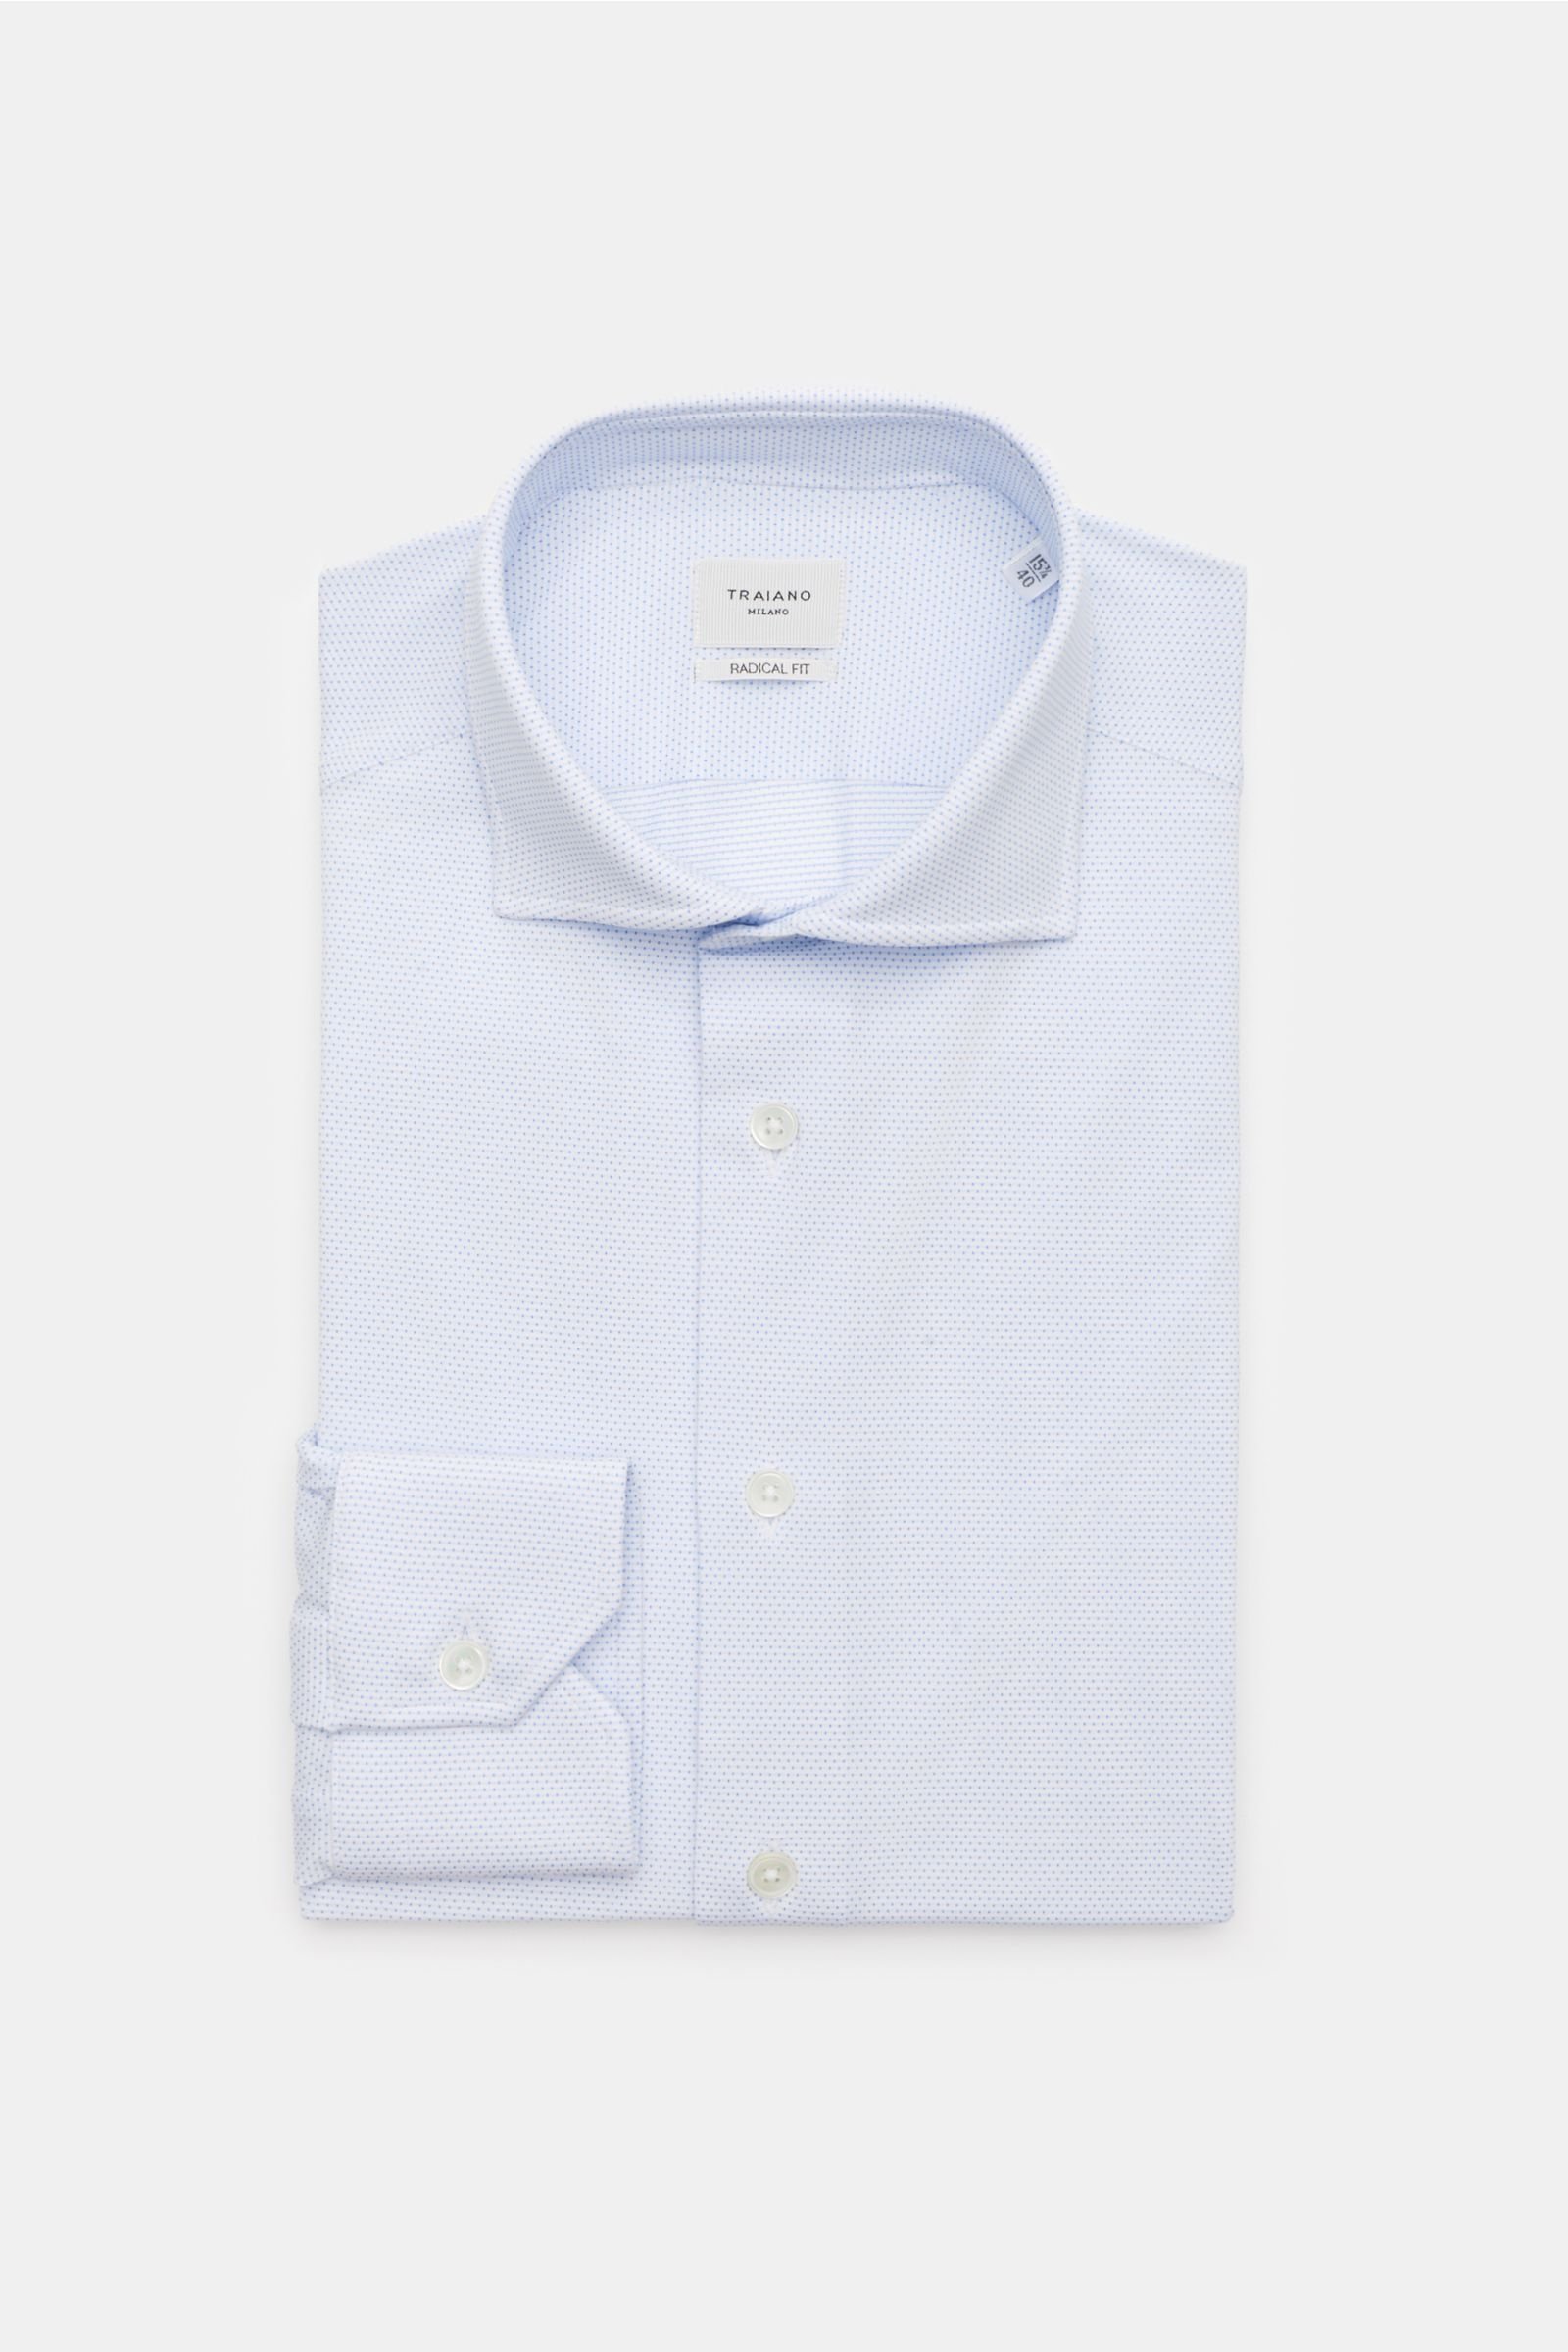 Jersey-Hemd schmaler Kragen weiß/hellblau gemustert 